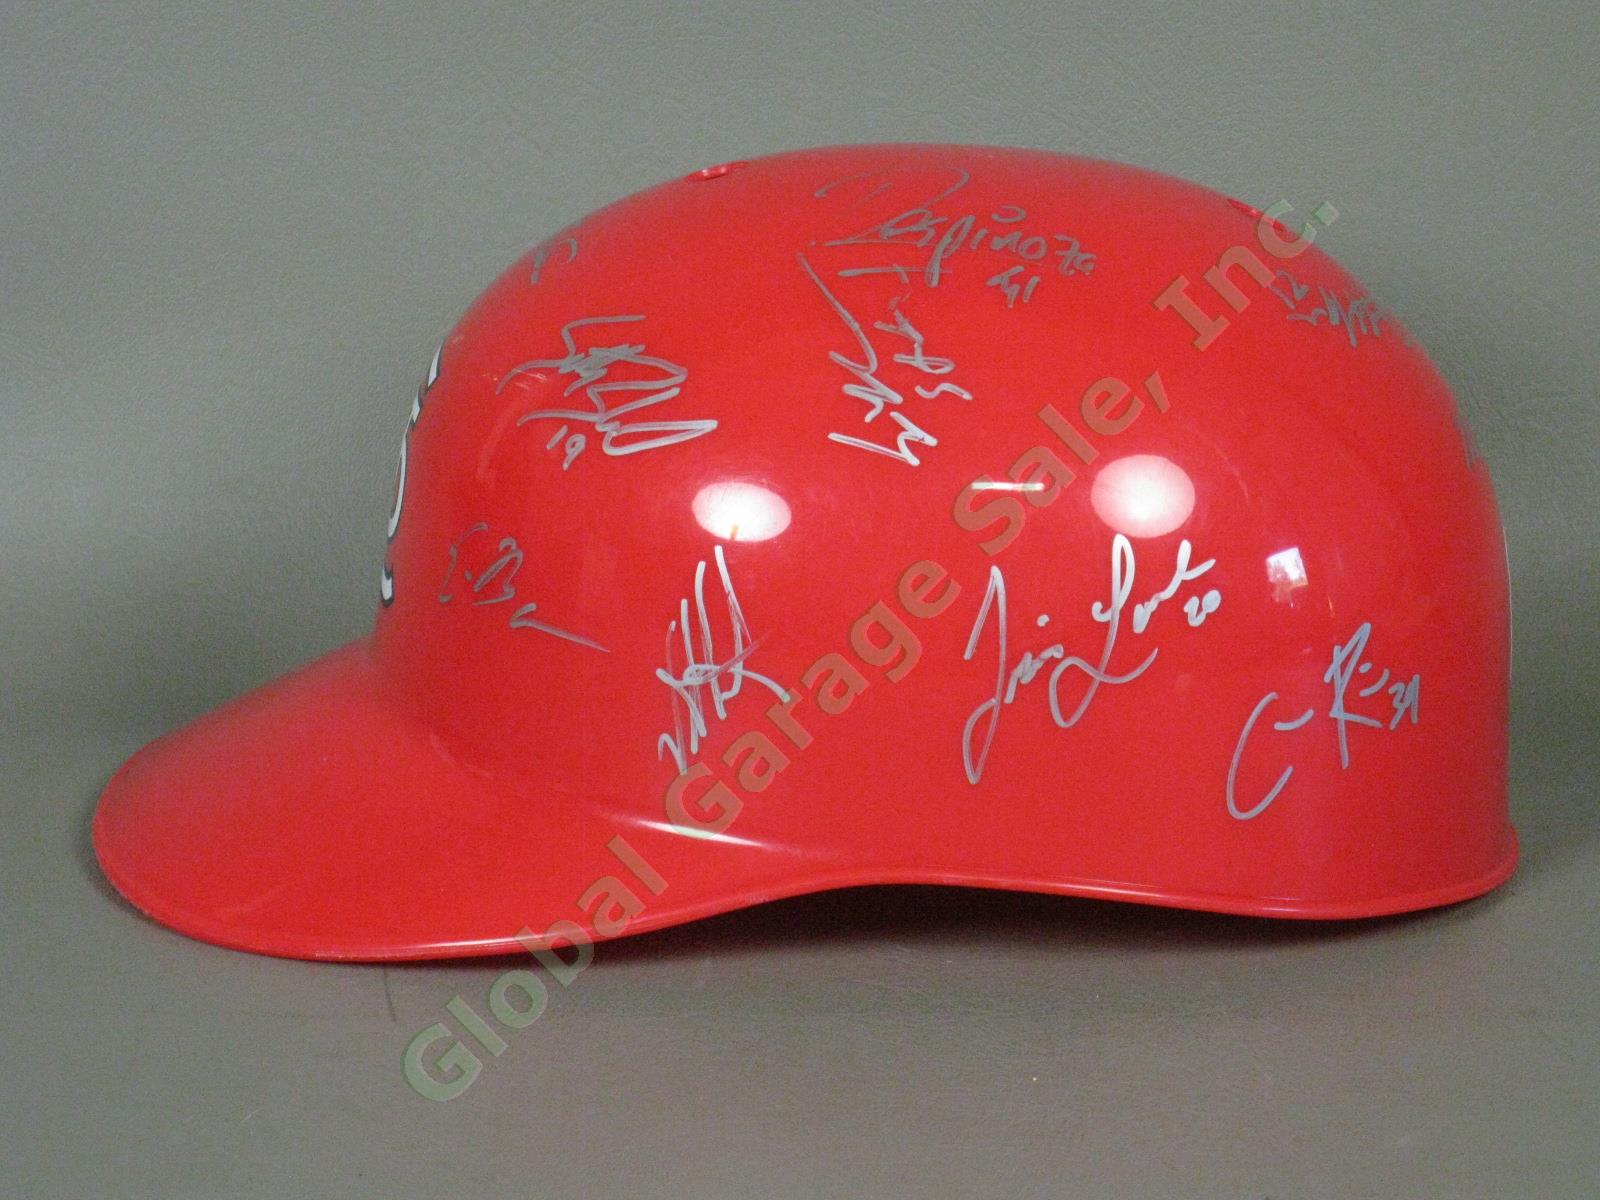 2010 Batavia Muckdogs Team Signed Baseball Helmet NYPL St. Louis Cardinals NR 3